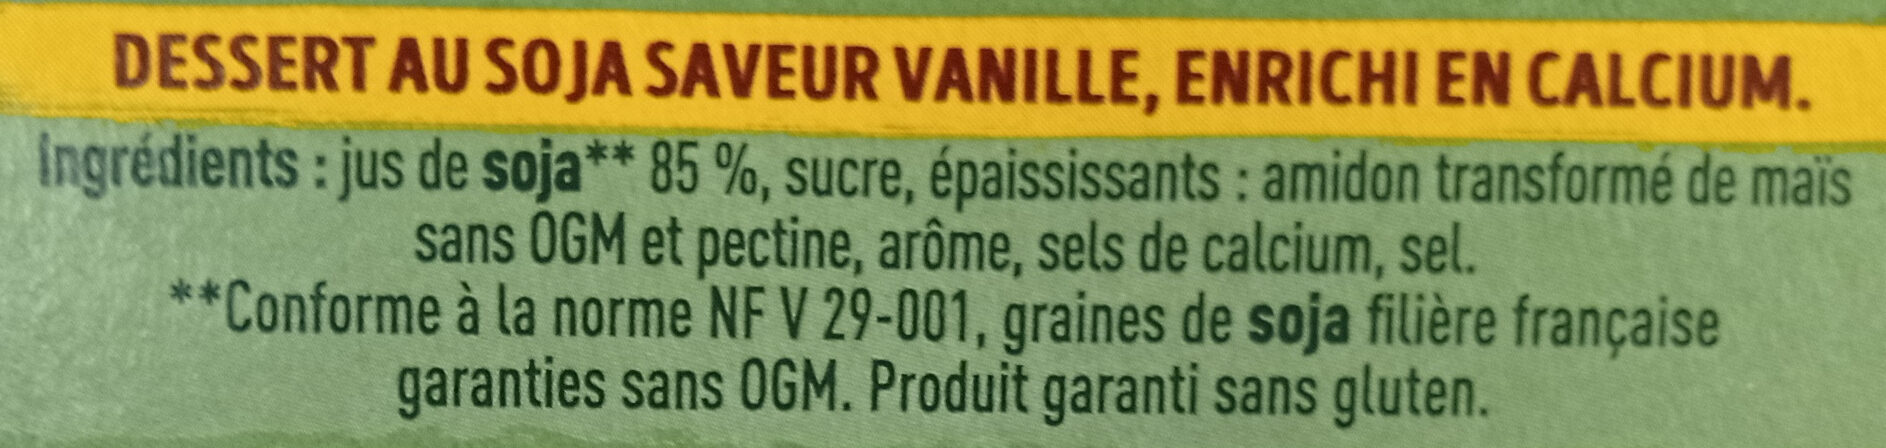 DESSERT VEGETAL saveur vanille - Ingrédients